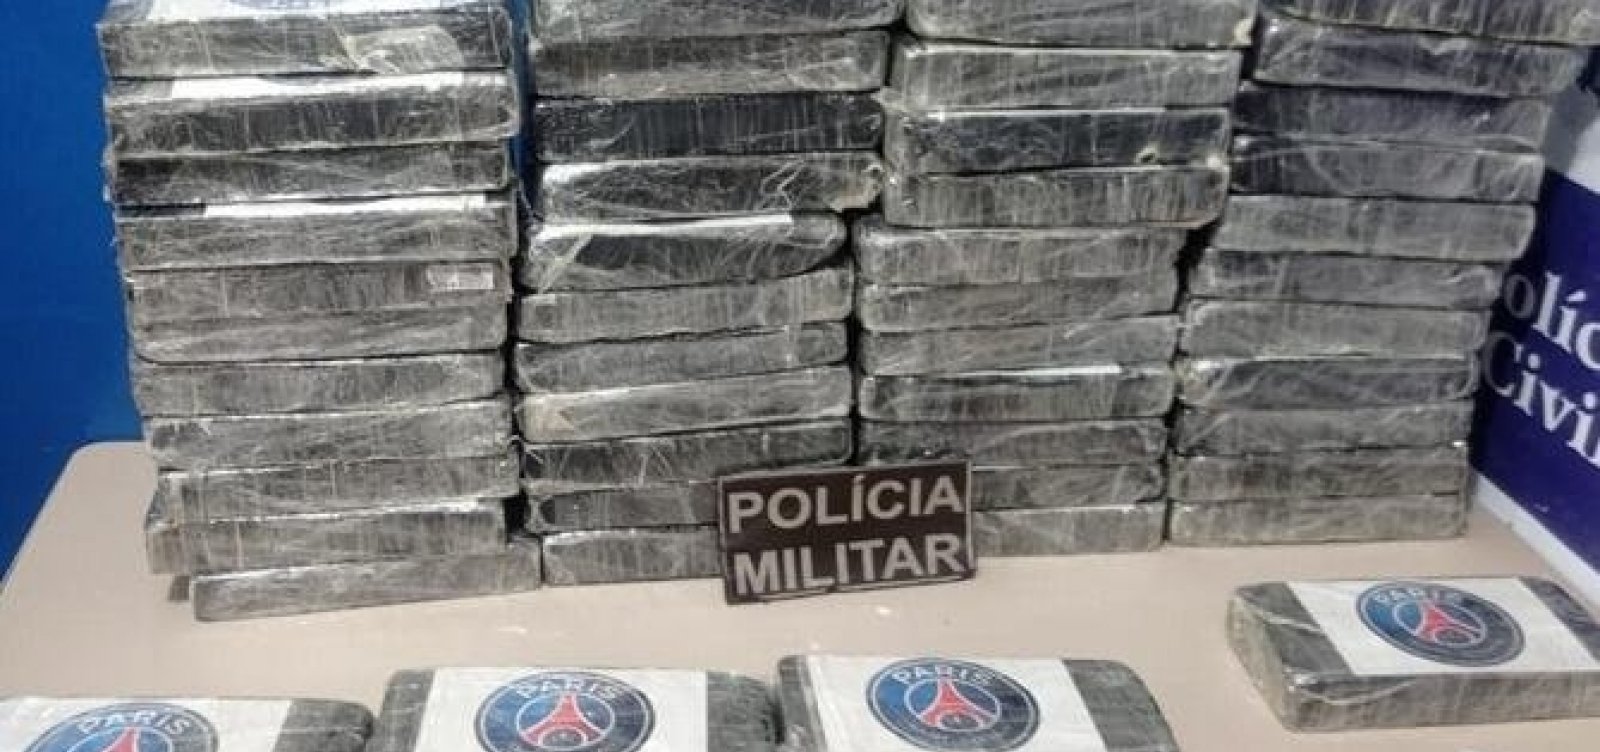 Cocaína avaliada em 1,4 milhão é achada em carro abandonado no interior da Bahia